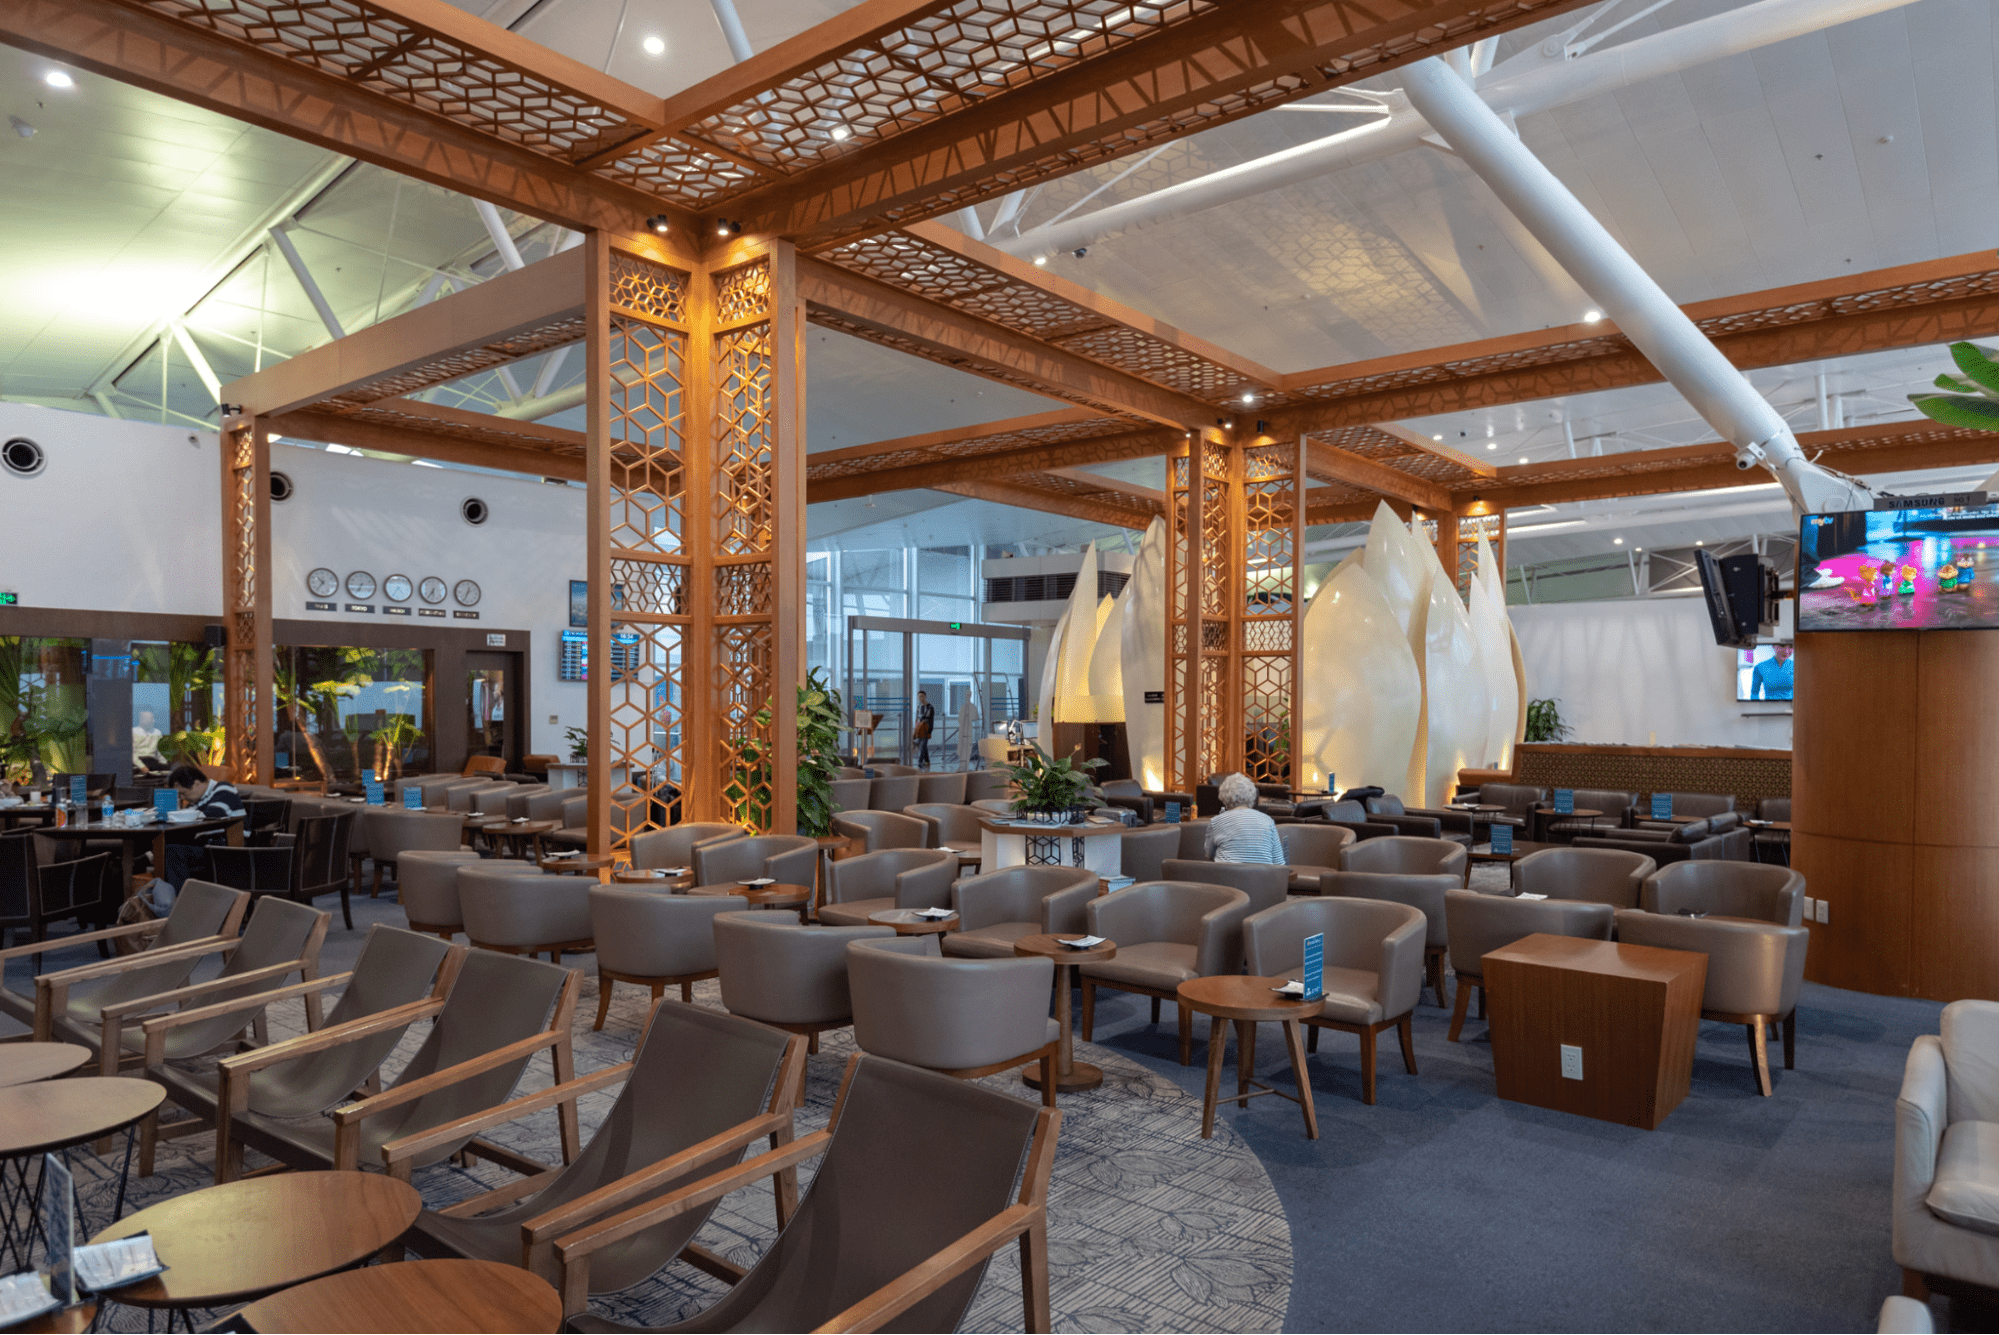 Một góc Phòng khách Bông sen (Lotus Lounge) - Phòng chờ hạng thương gia của Vietnam Airlines